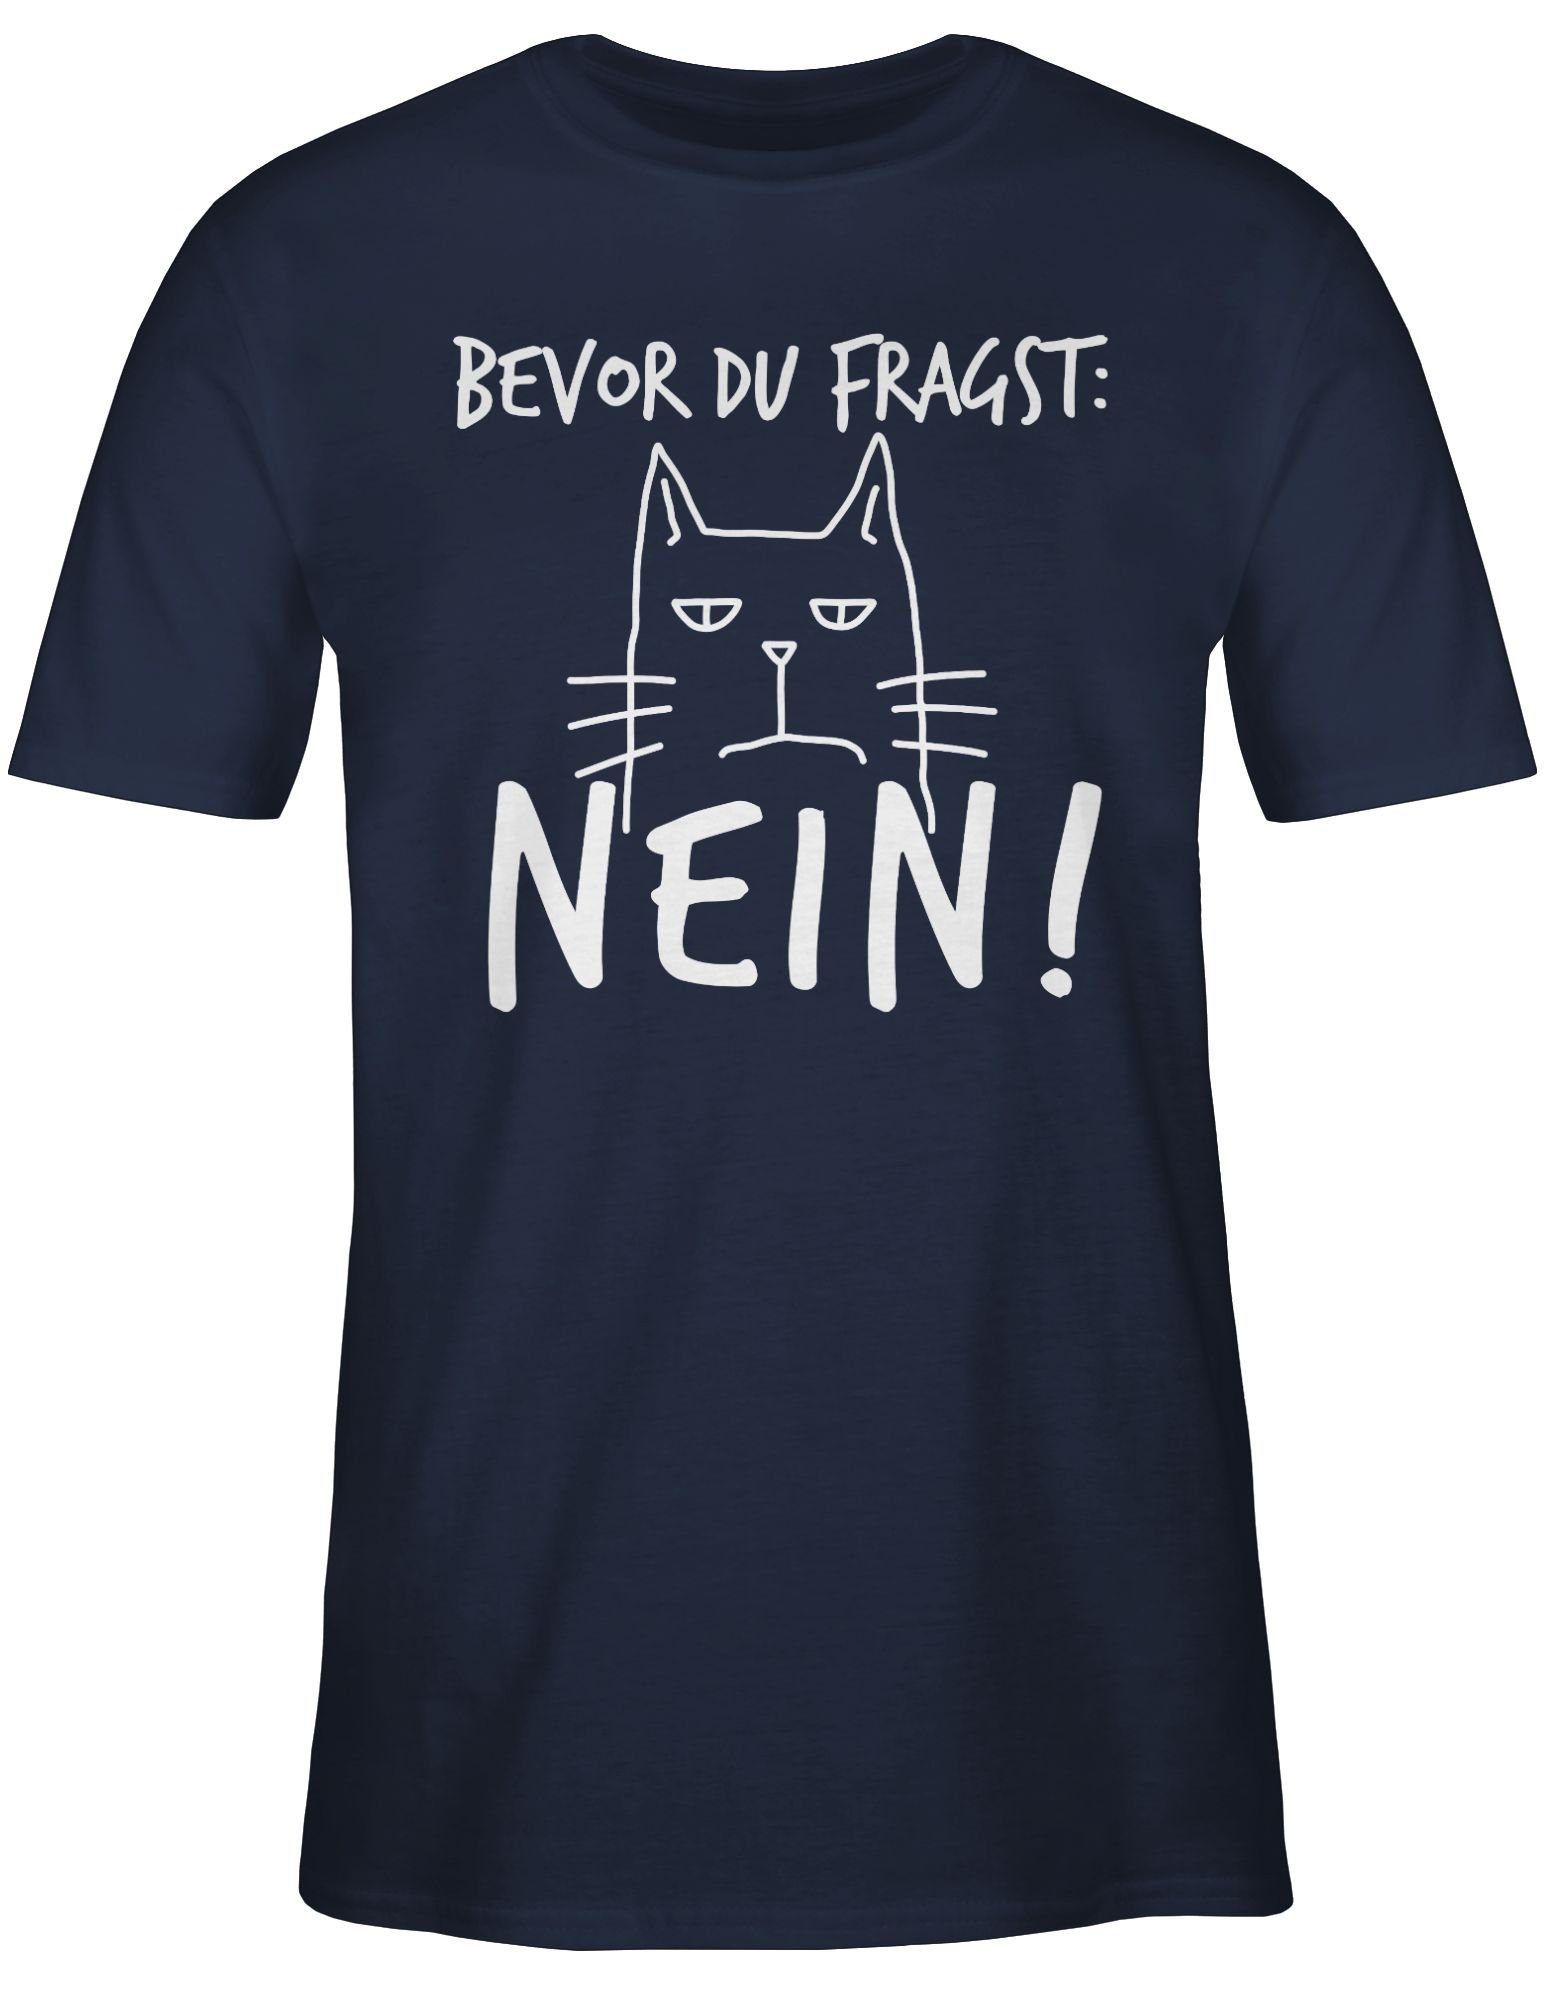 fragst: T-Shirt - Navy mit Statement Shirtracer Bevor Weiß 01 Blau Nein! - Sprüche du Katze Spruch